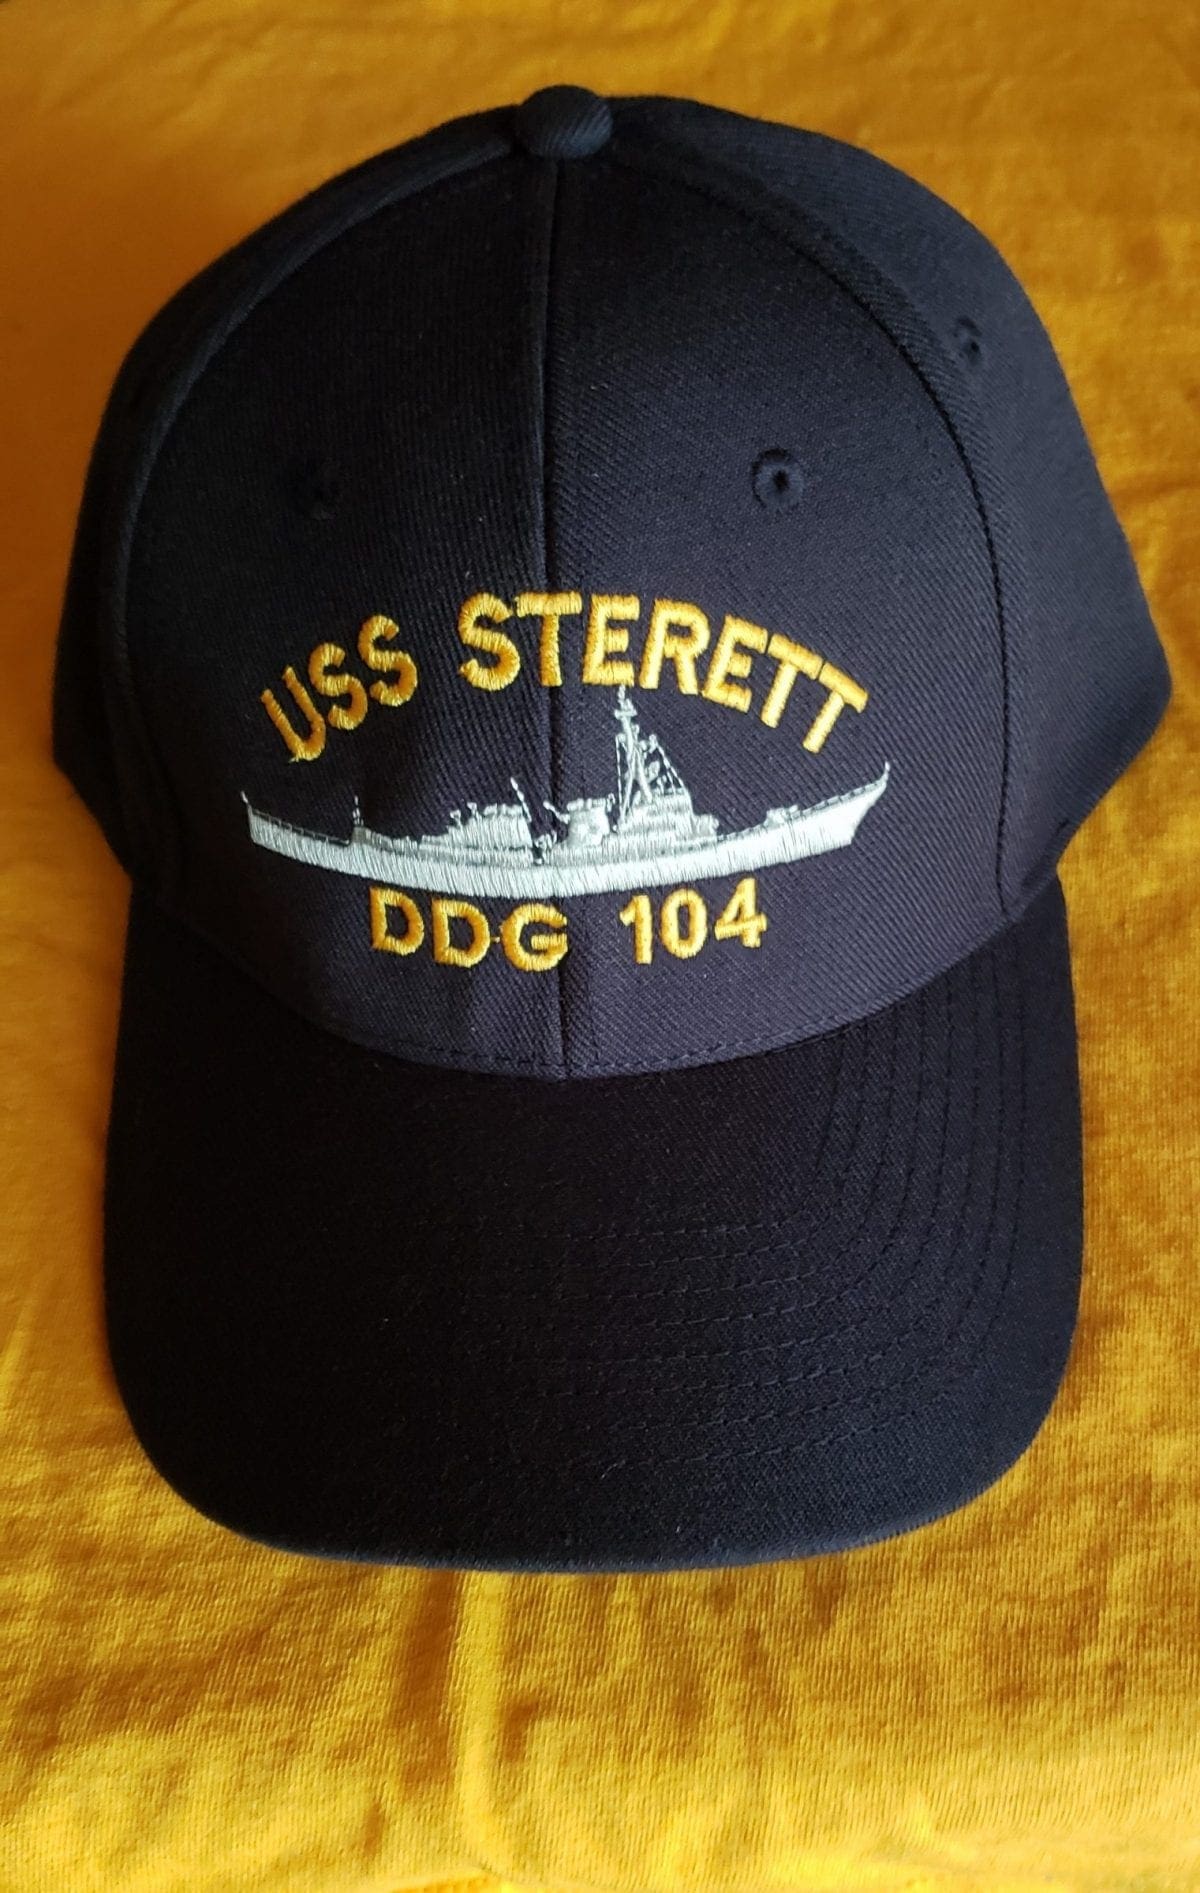 Ball Cap, Wool Blend, Navy Blue Made in USA DDG-104 — Sterett Association